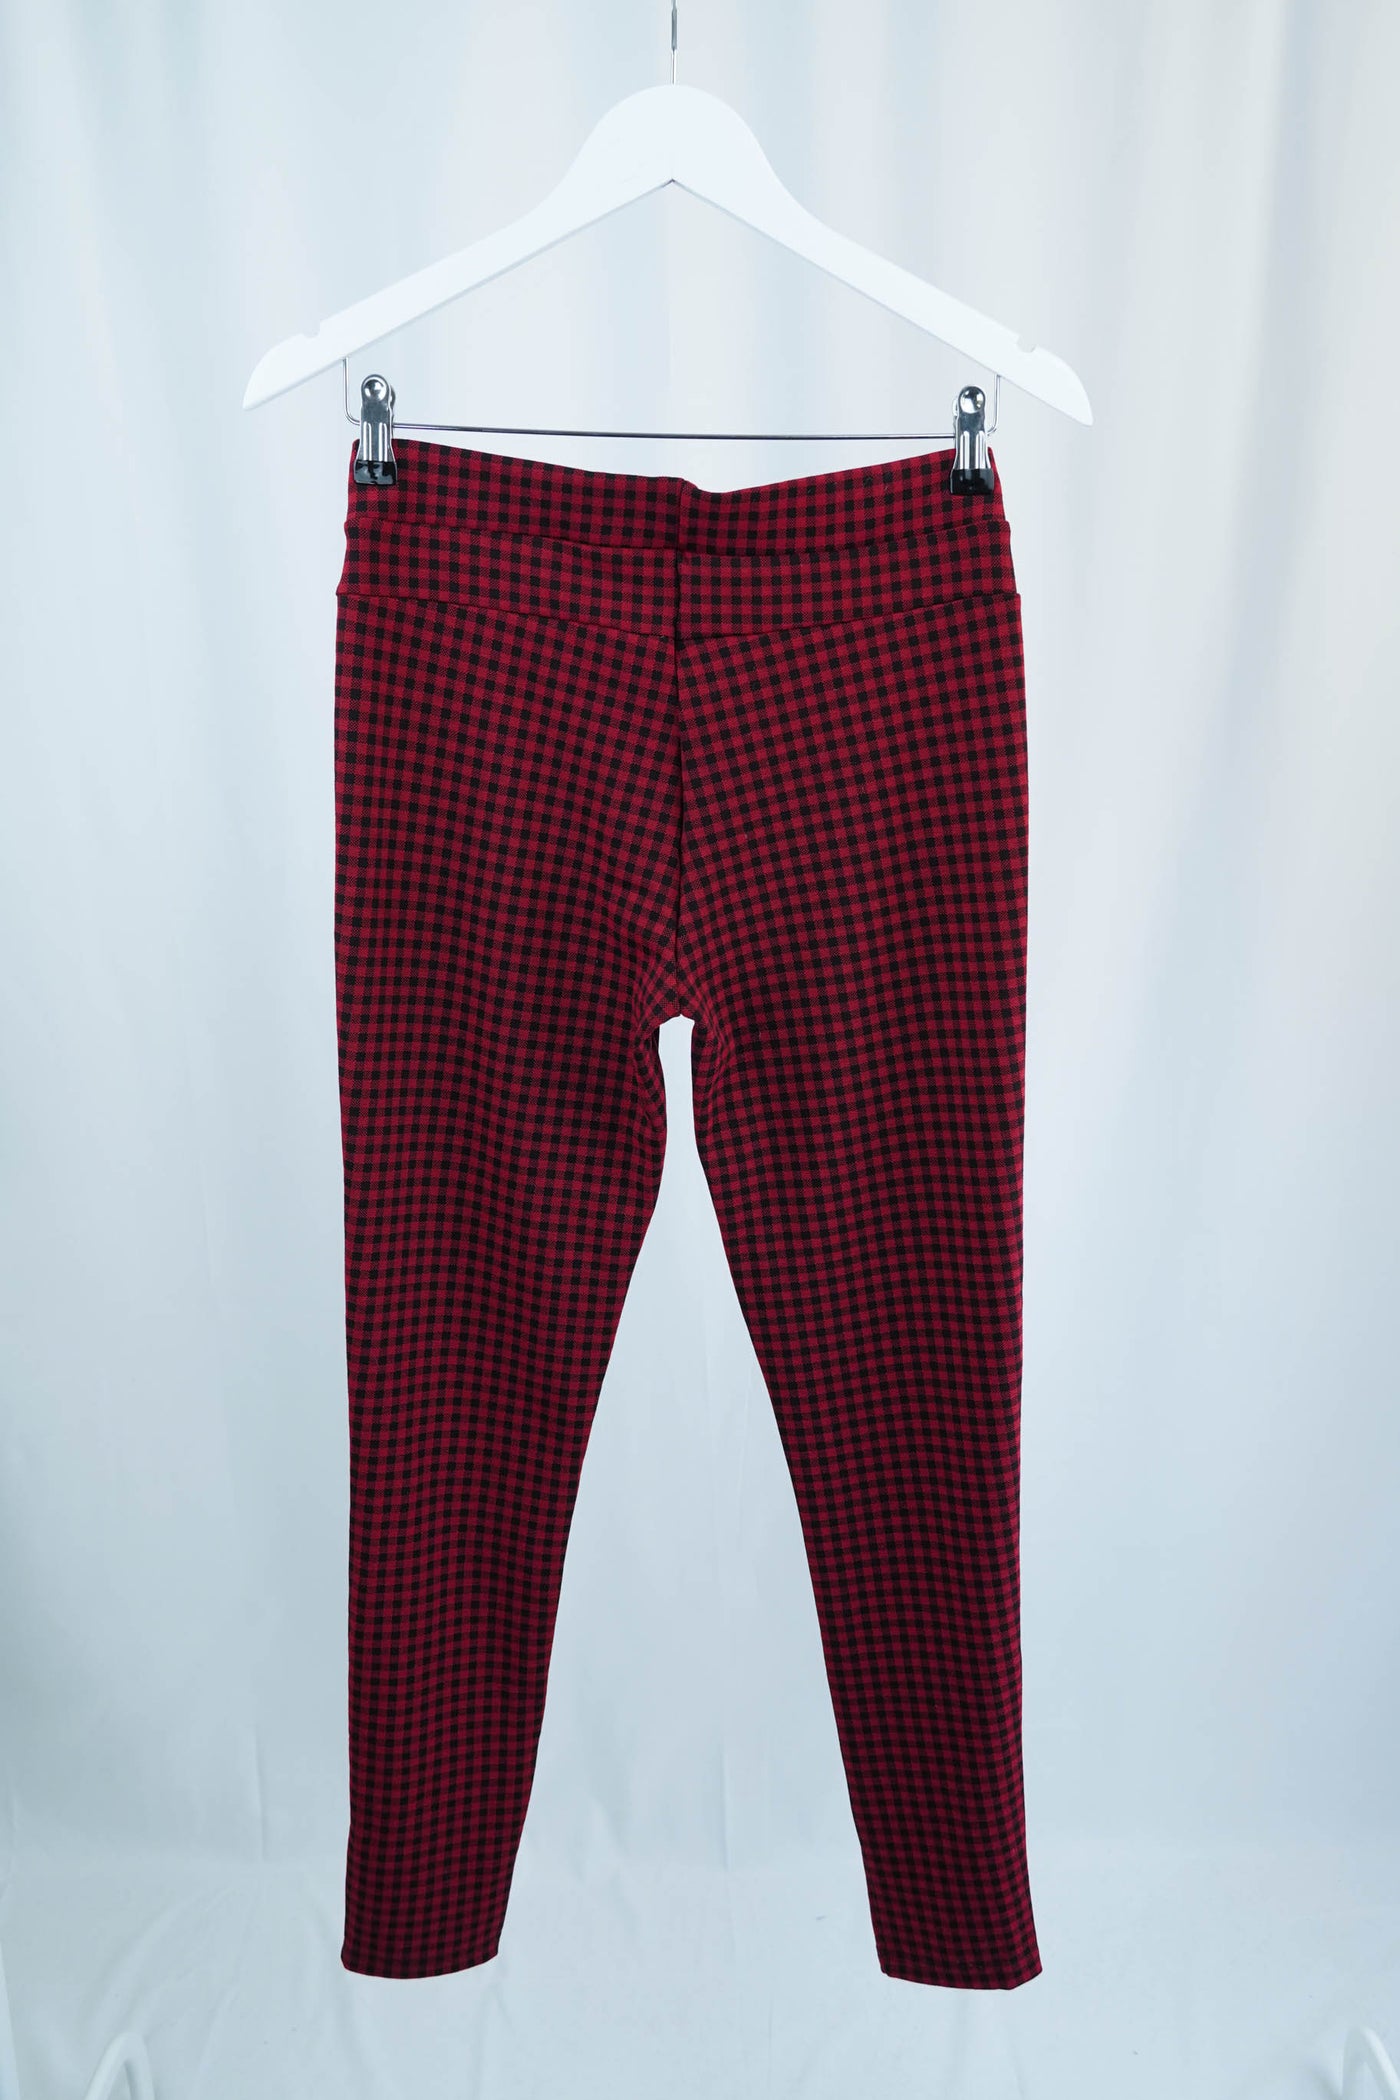 Pantalón tipo legging rojo de cuadros negros